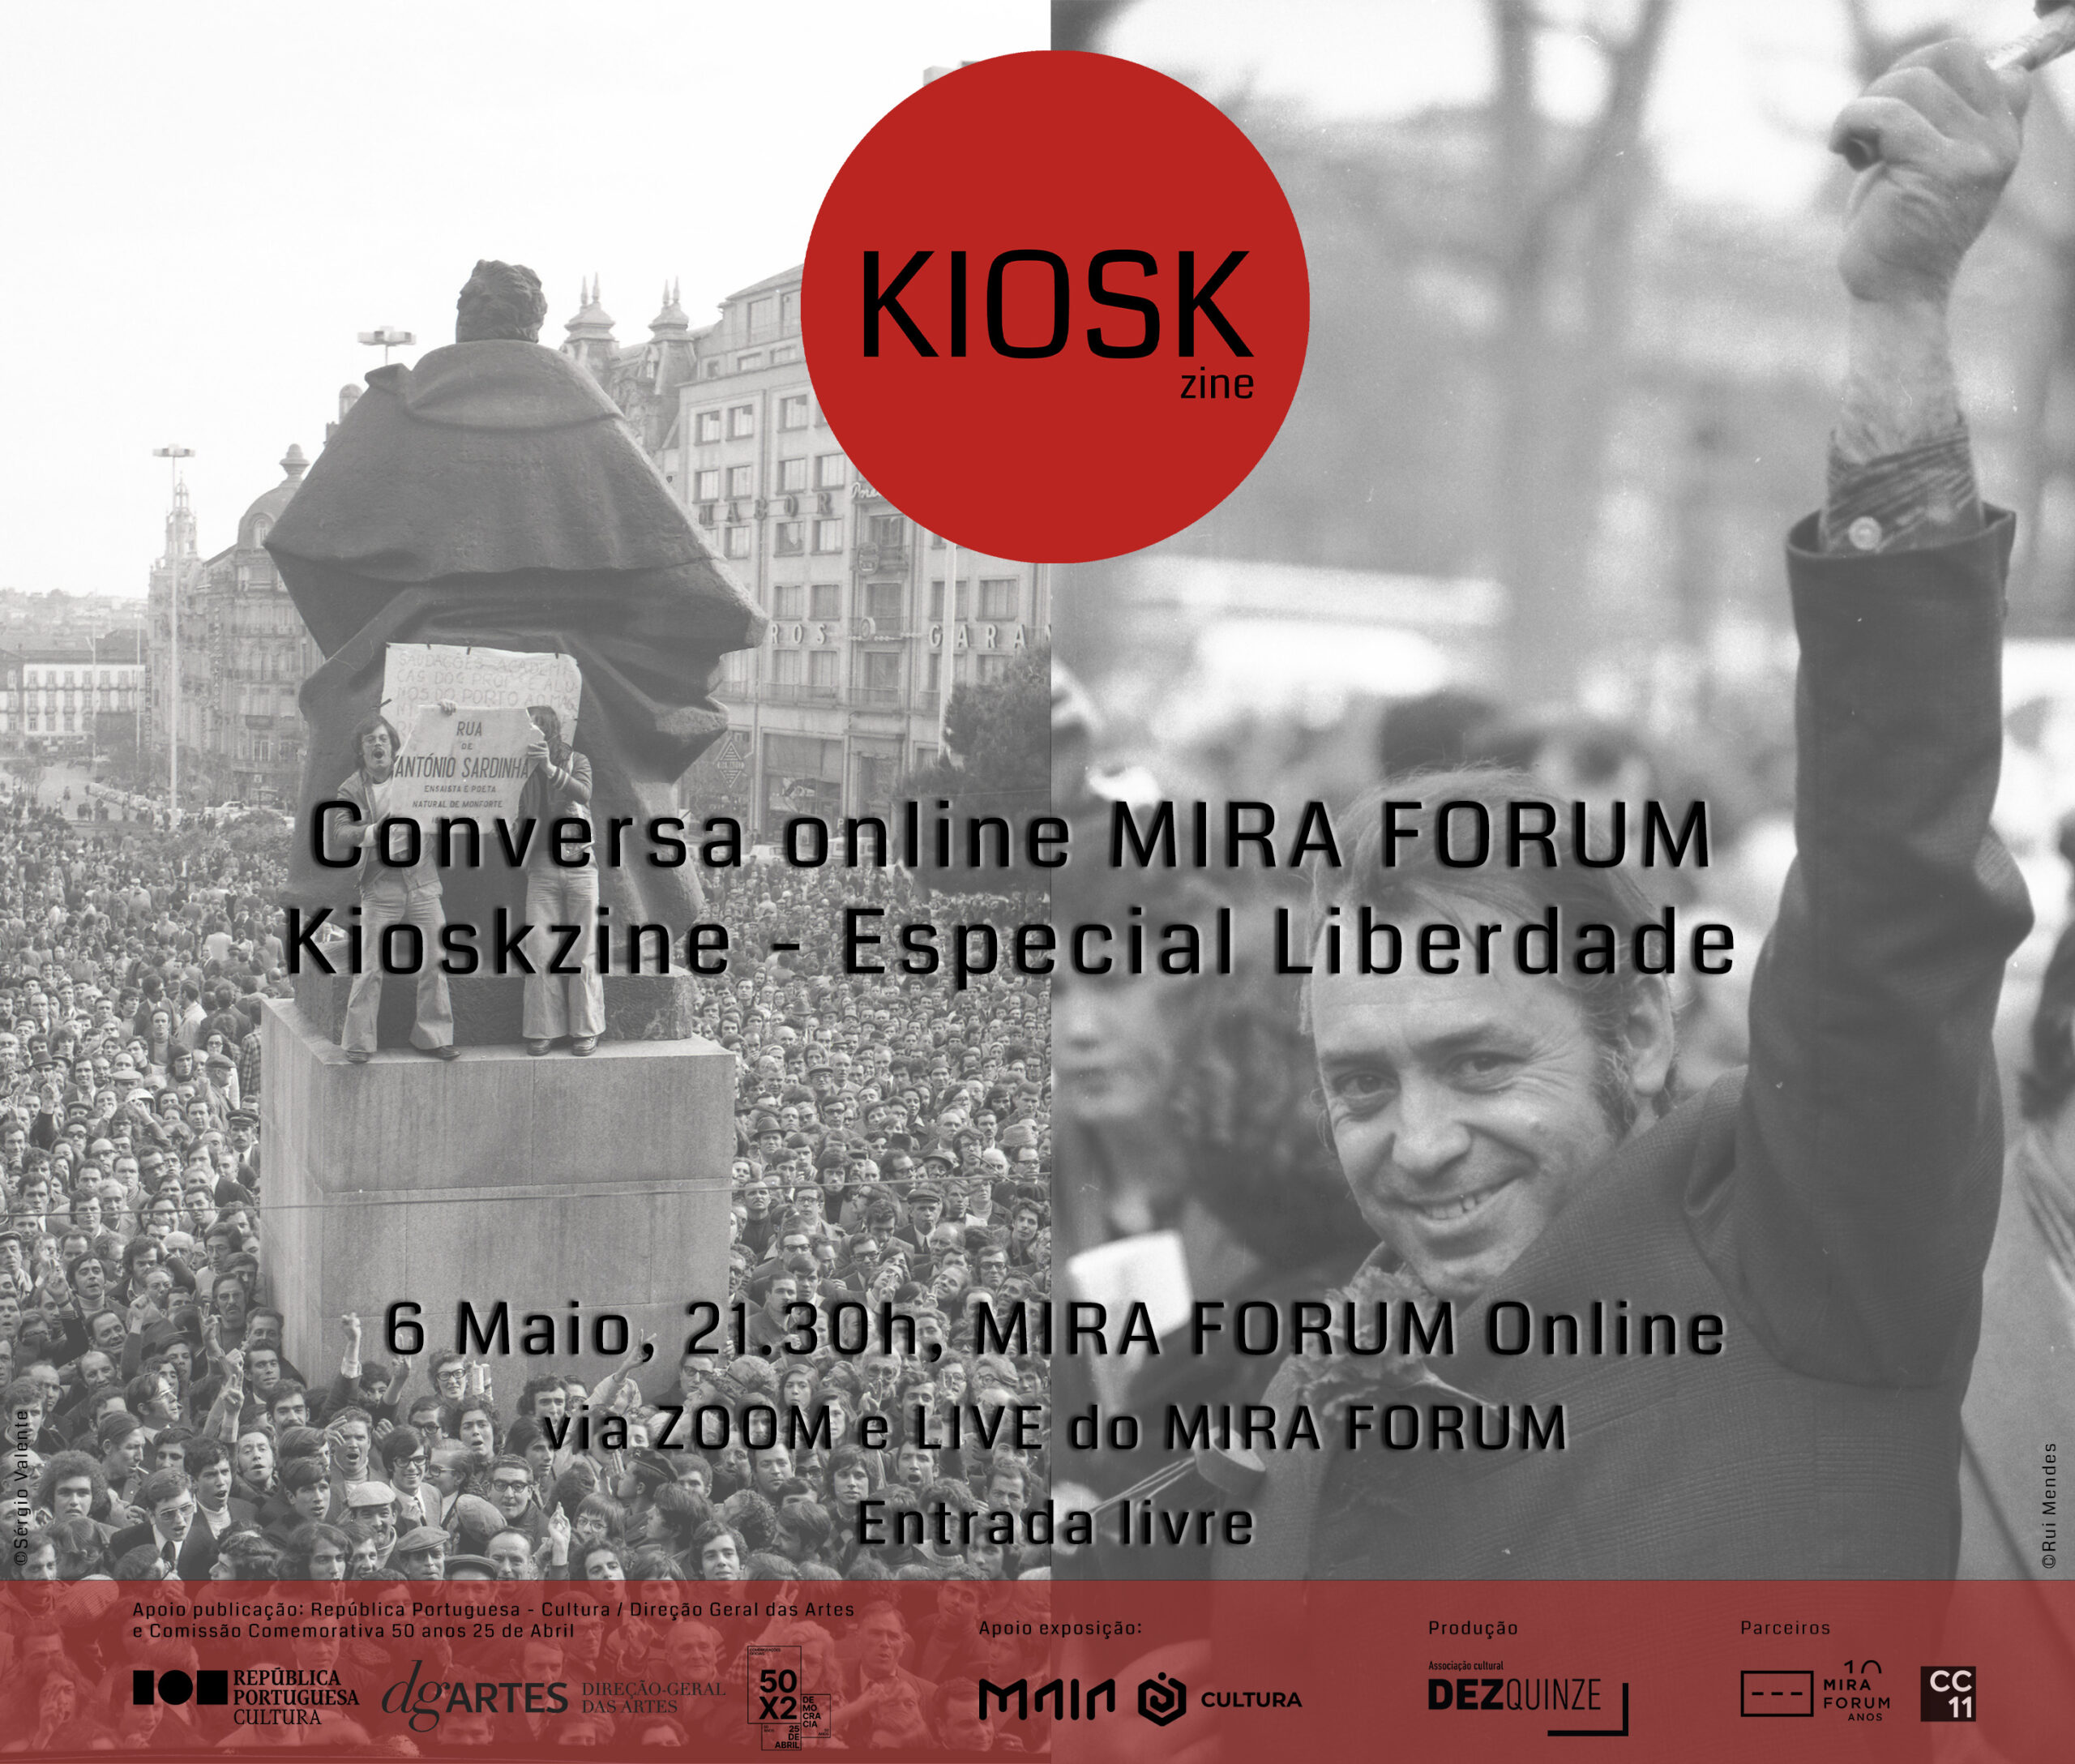 Capa do Evento Kioskzine - Especial Liberdade - Conversa online no MIRA FORUM